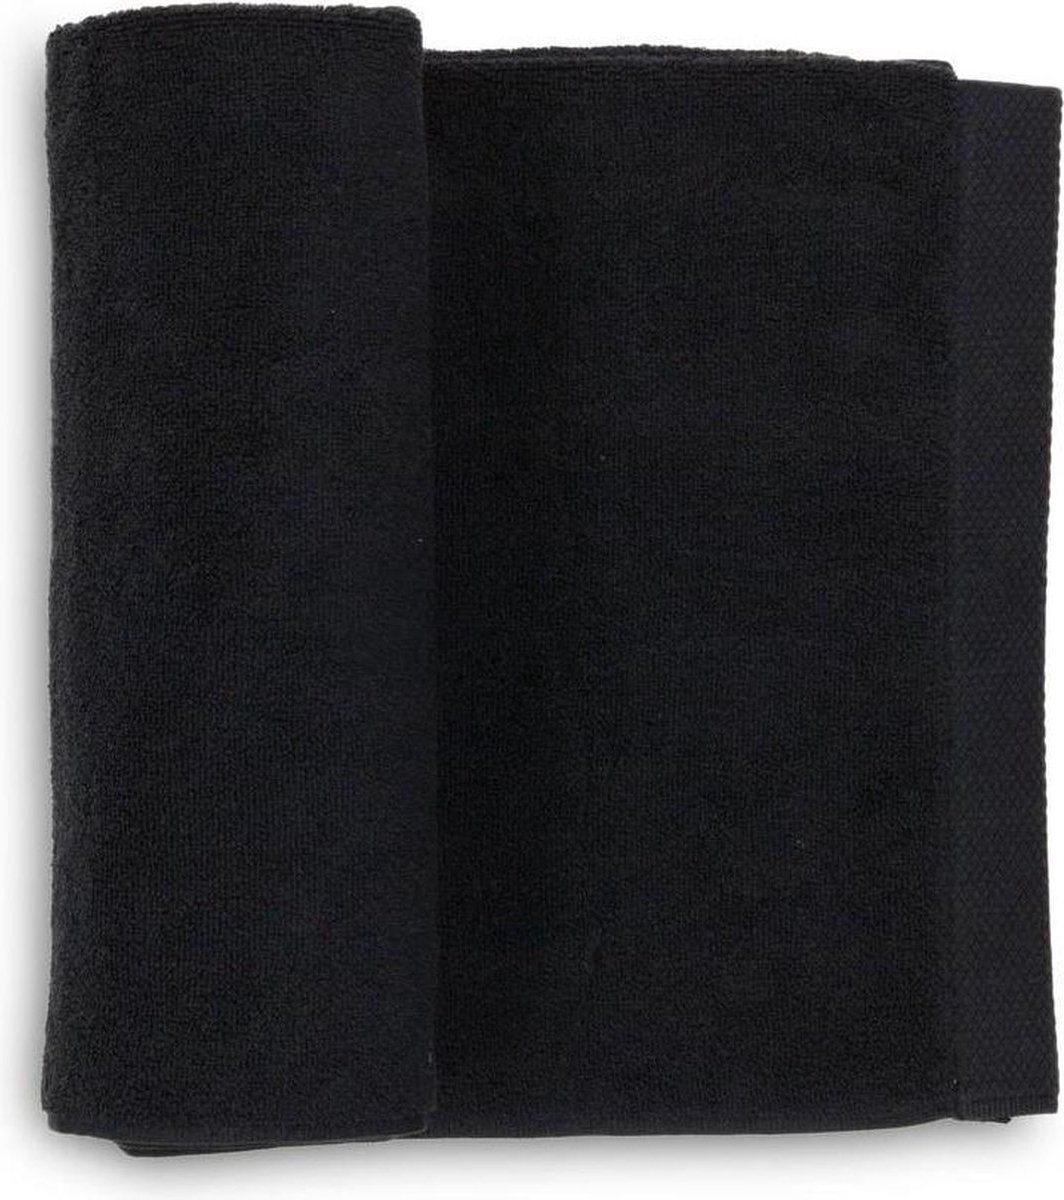 2x Premium Katoen Badhanddoeken Zwart | 60x110 | 650 gr/m2 Europees Kwaliteit | Vochtabsorberend En Zacht